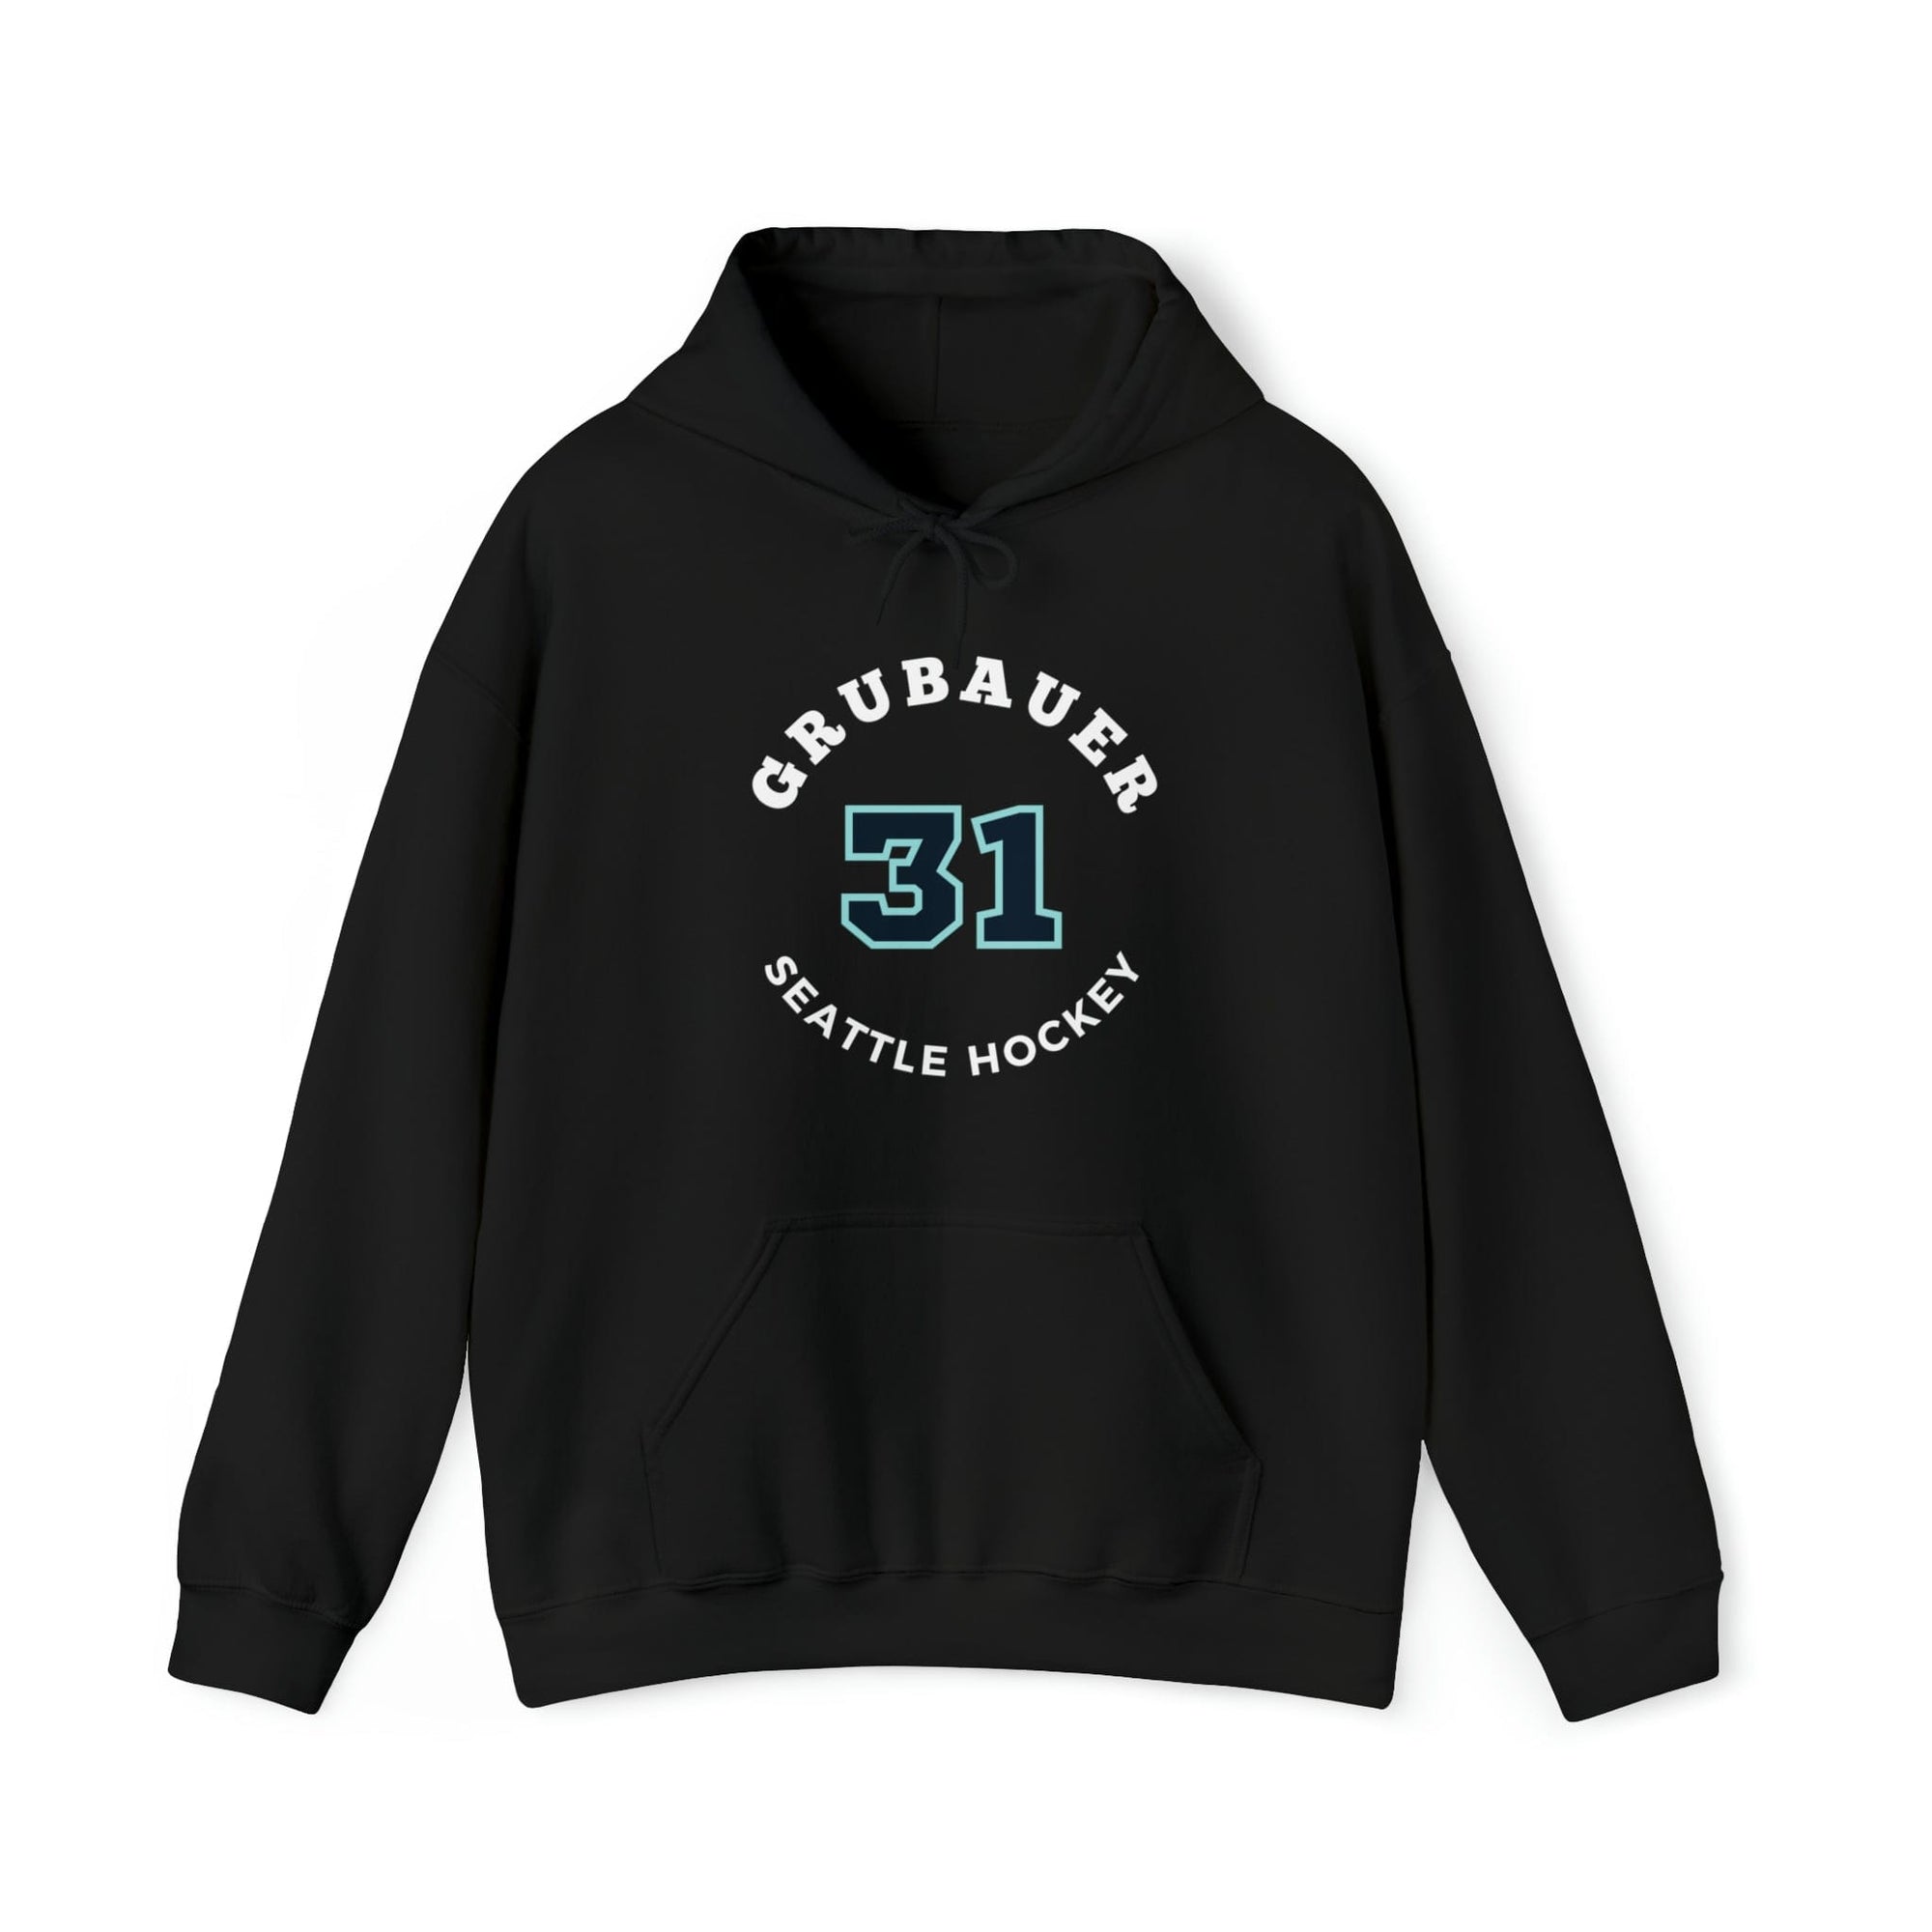 Hoodie Grubauer 31 Seattle Hockey Number Arch Design Unisex Hooded Sweatshirt